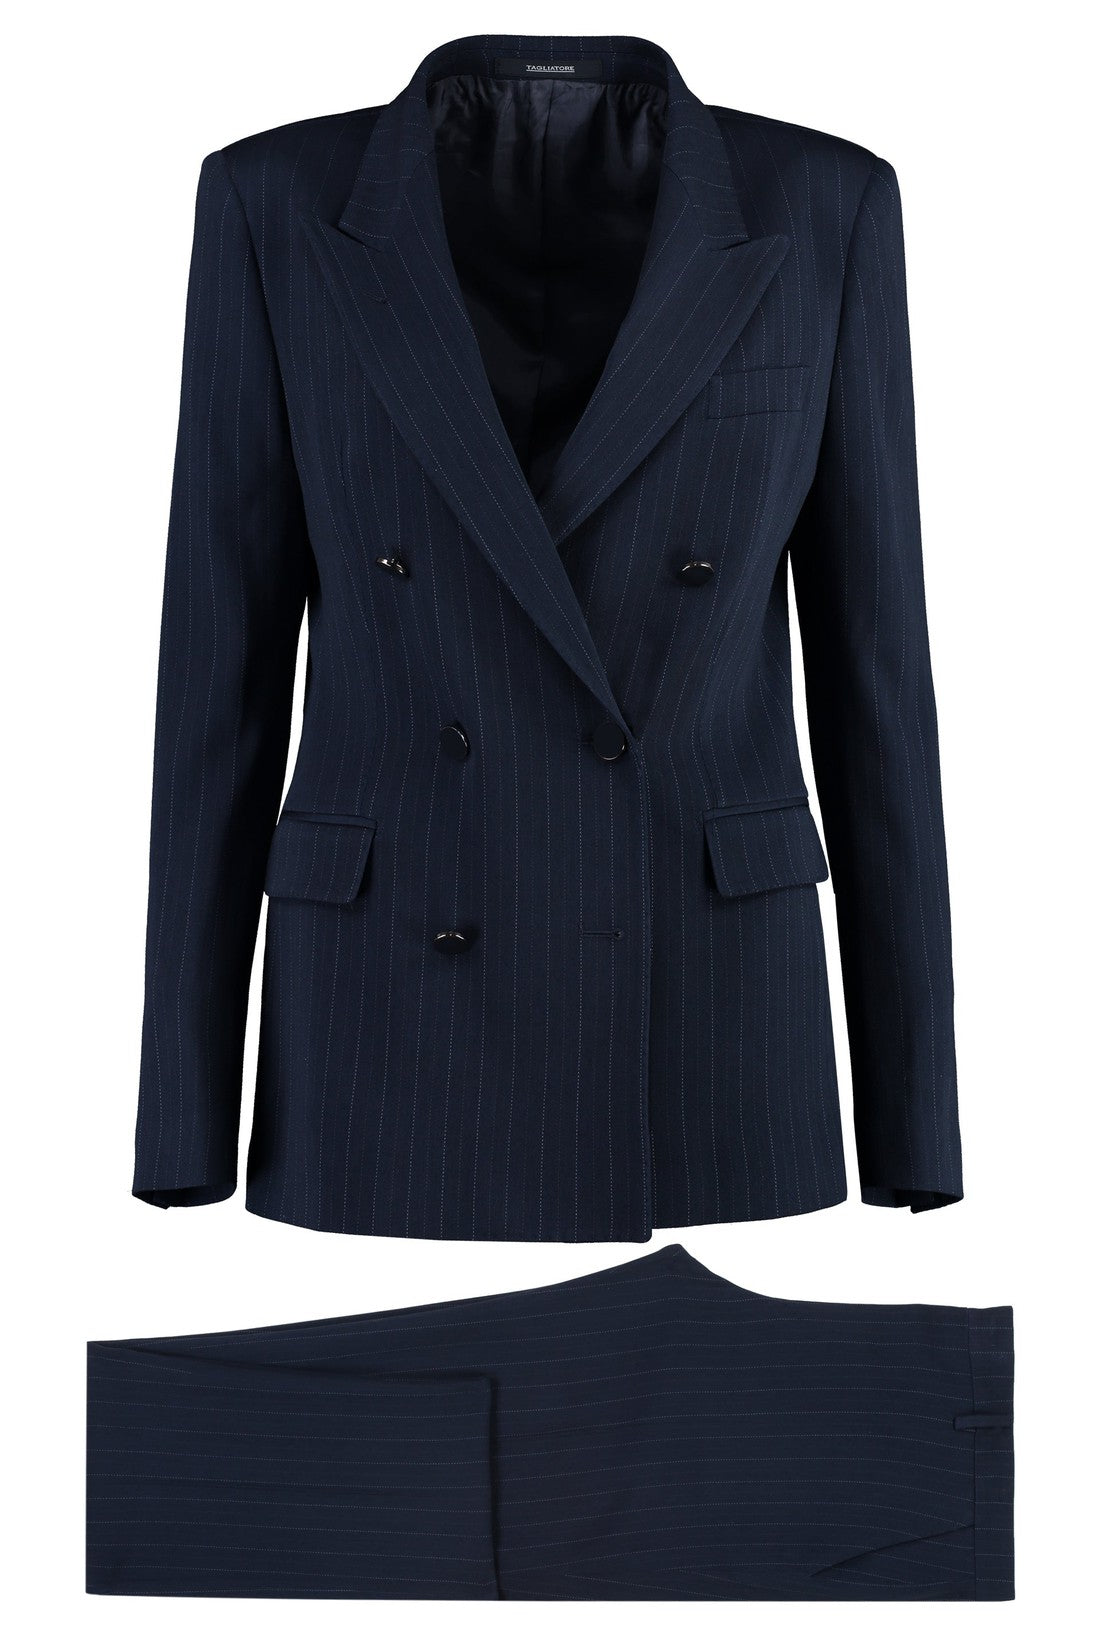 0205 Tagliatore-OUTLET-SALE-T-Parigi two-piece suit-ARCHIVIST